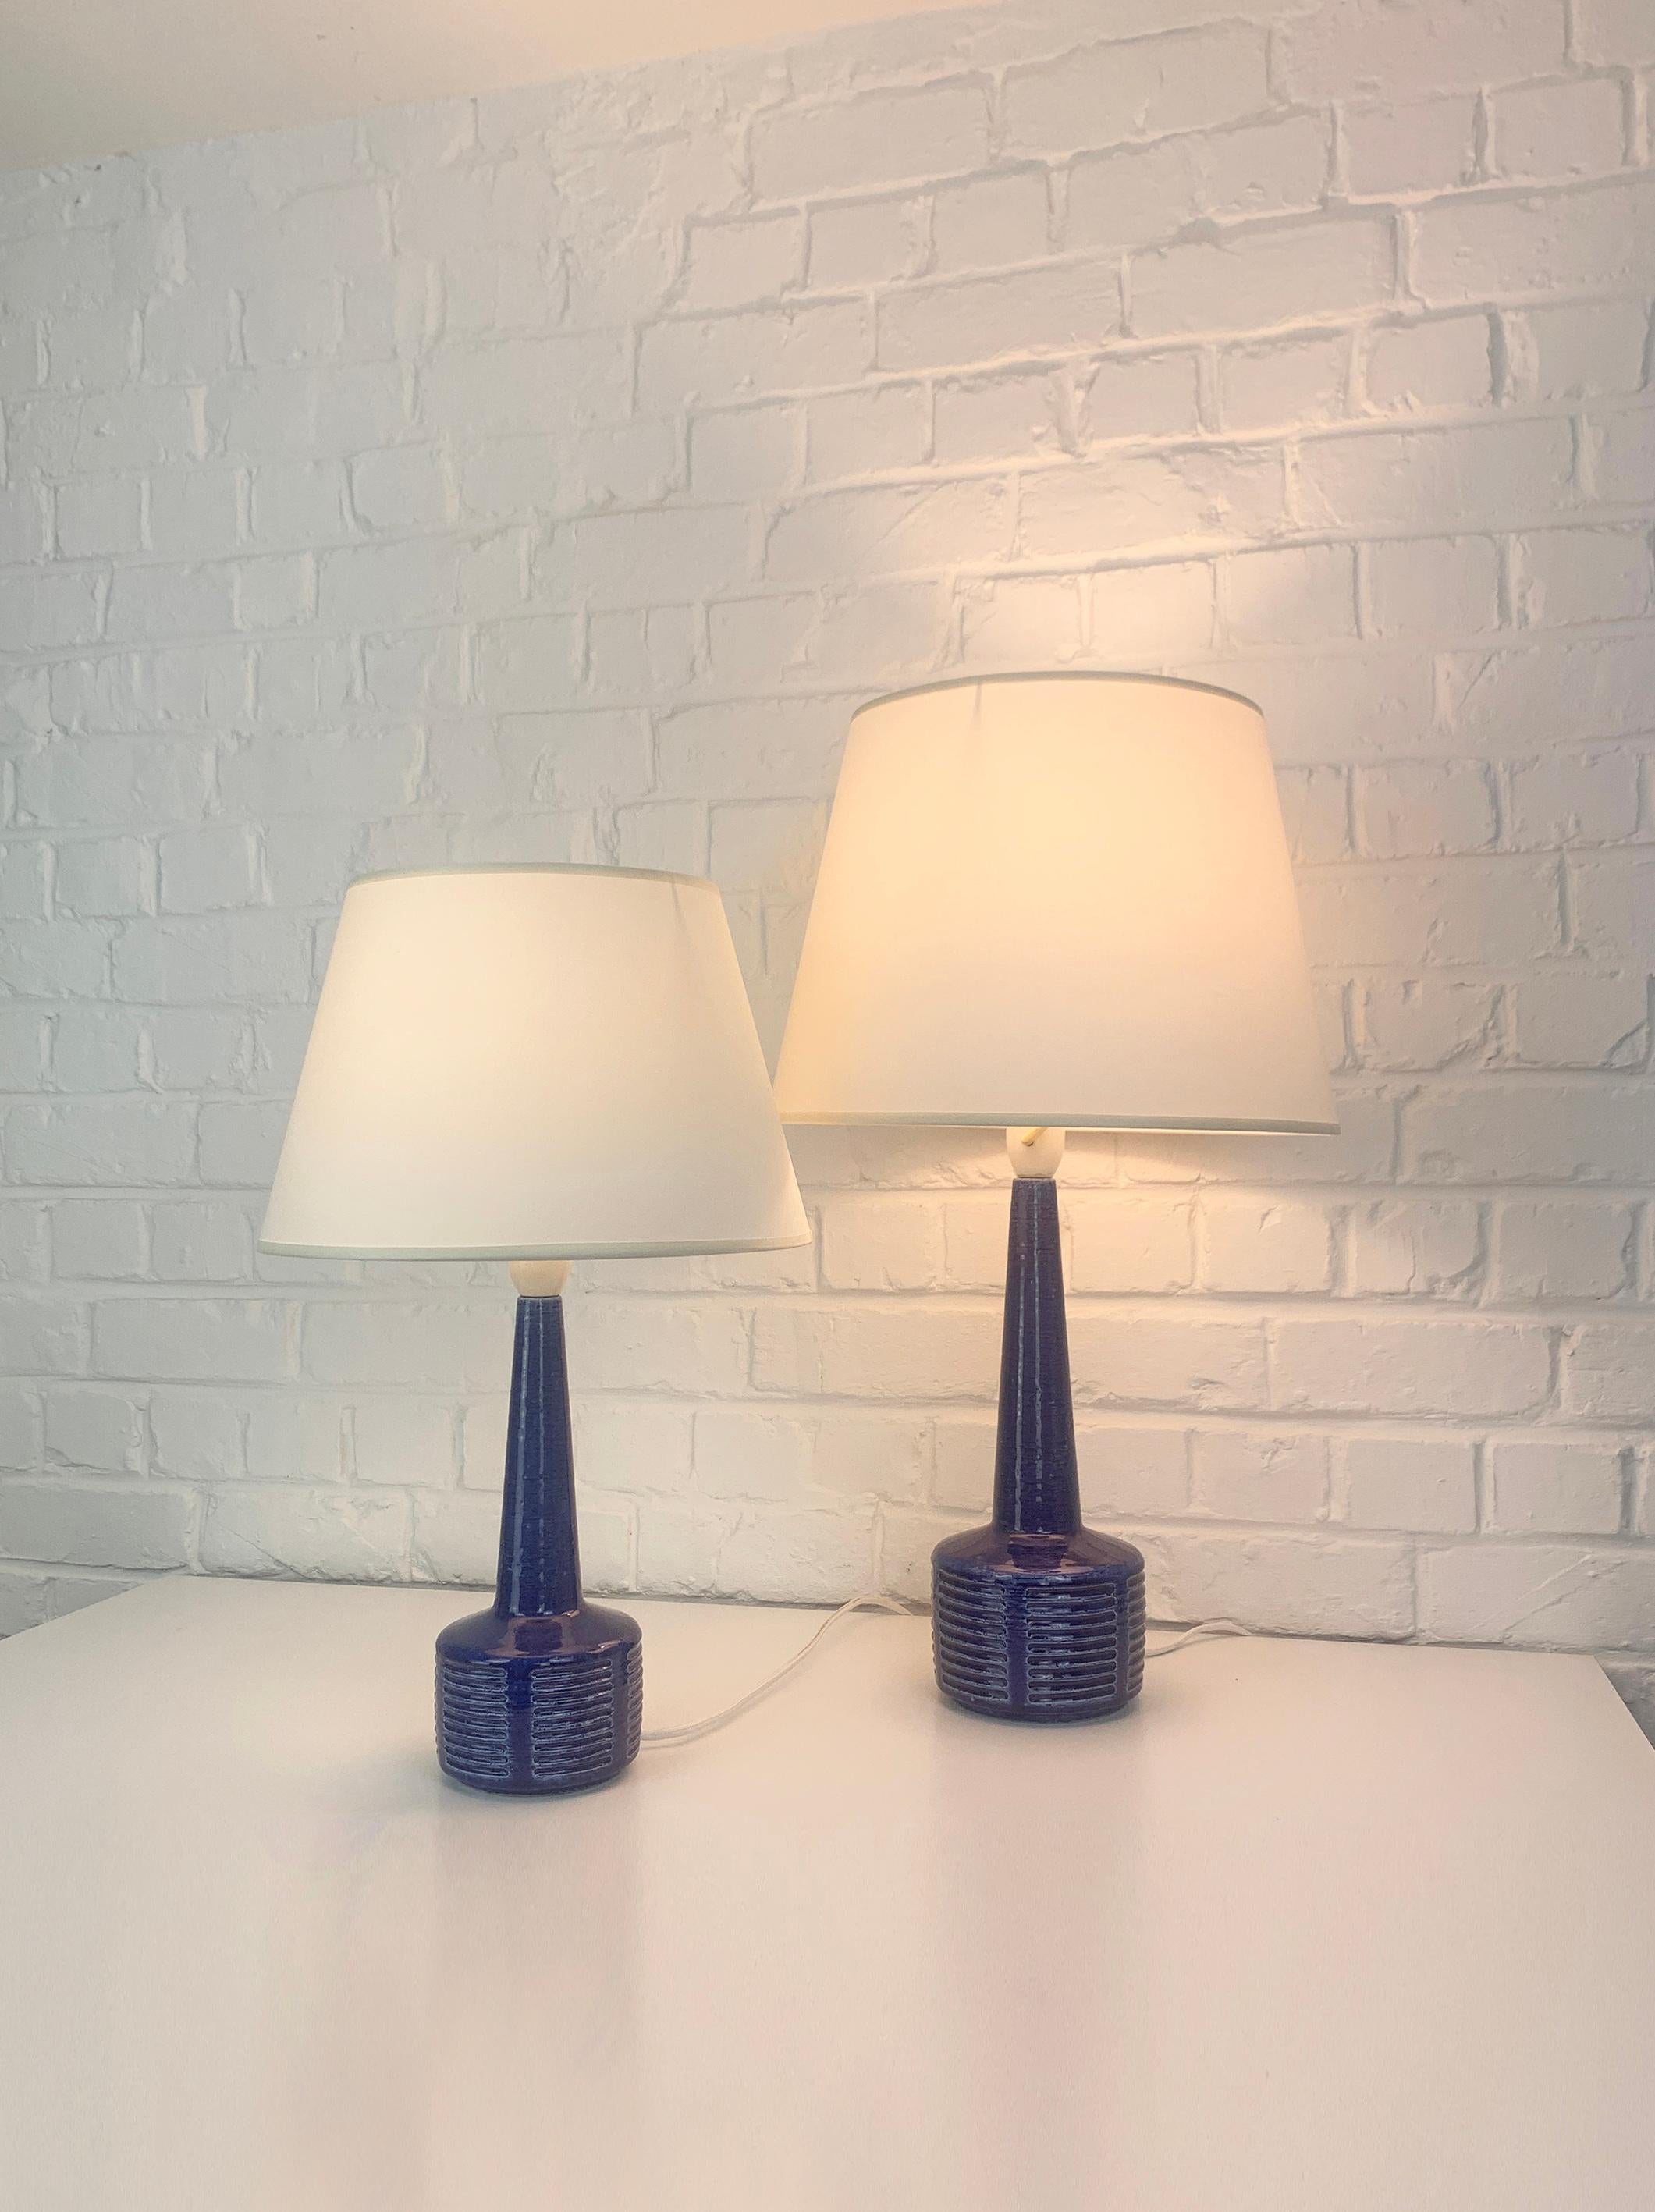 Paire de lampes de table en grès, modèles DL34 et DL35, produites par Palshus (Danemark). 

Les pieds des lampes sont recouverts d'une glaçure bleue et d'un motif imprimé. L'argile chamottée donne une surface naturelle et vivante. Tous deux sont